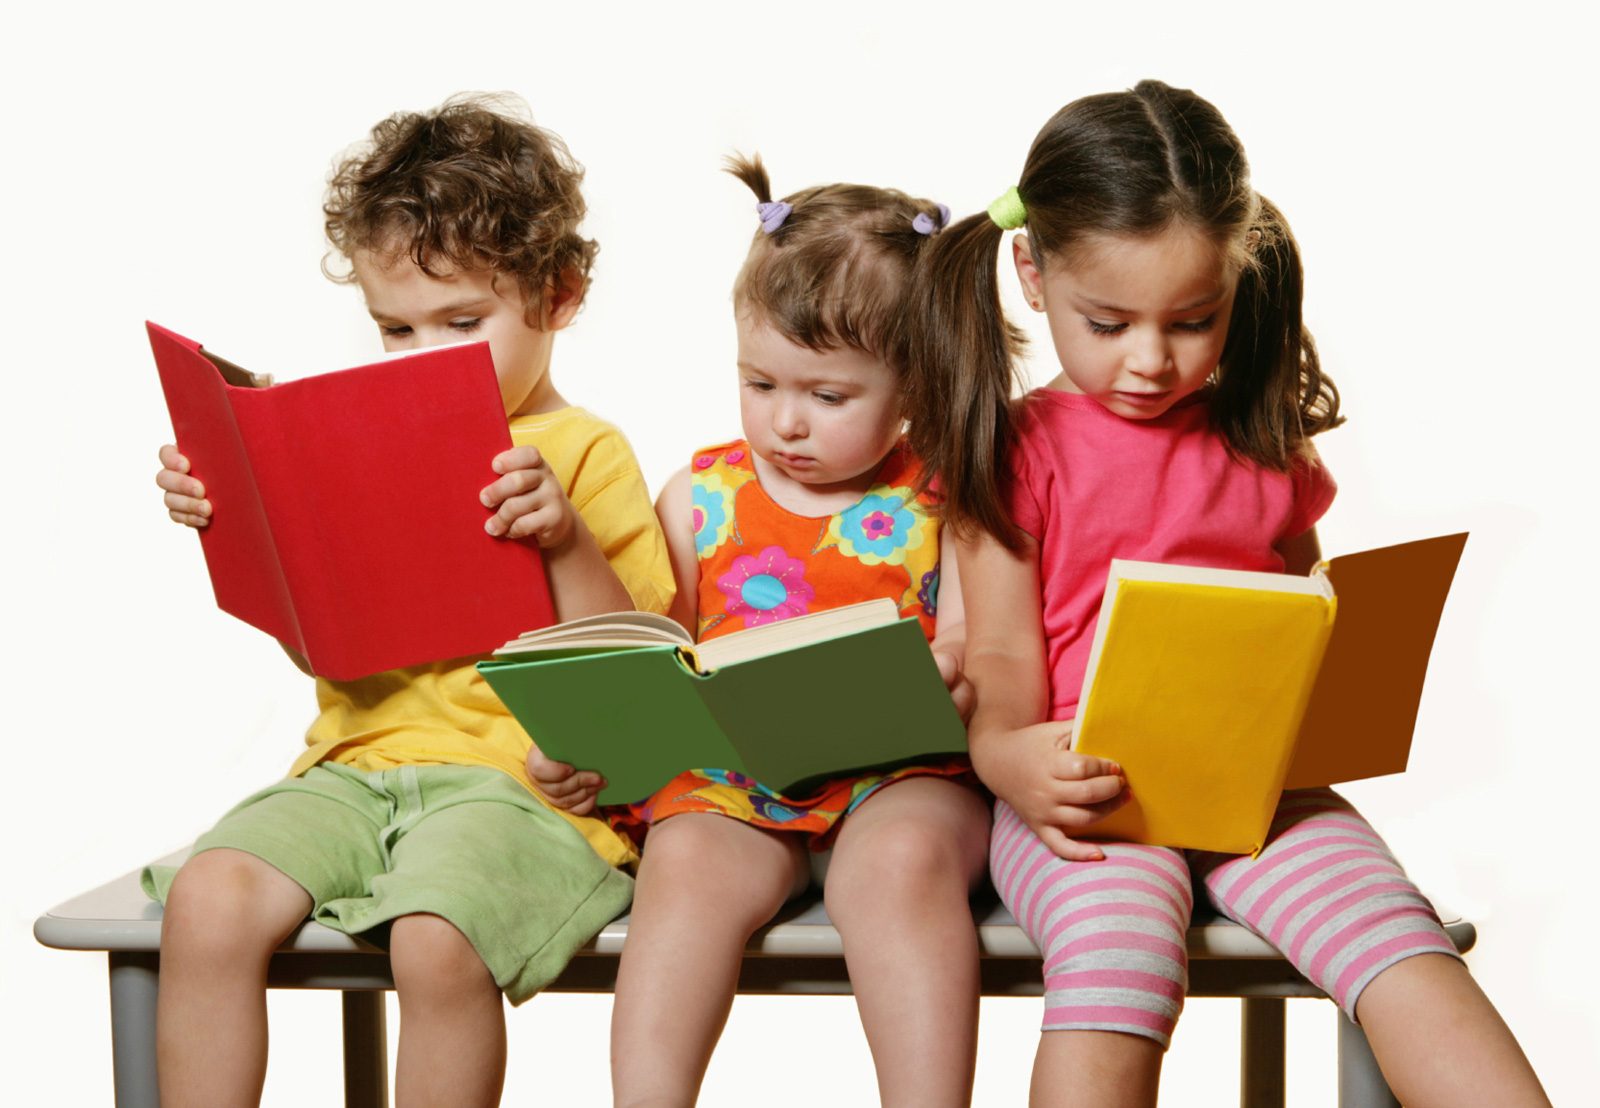 Cild book - راهکارهایی که اگر به آنها عمل کنید، کودک شما کتاب خوان می شود